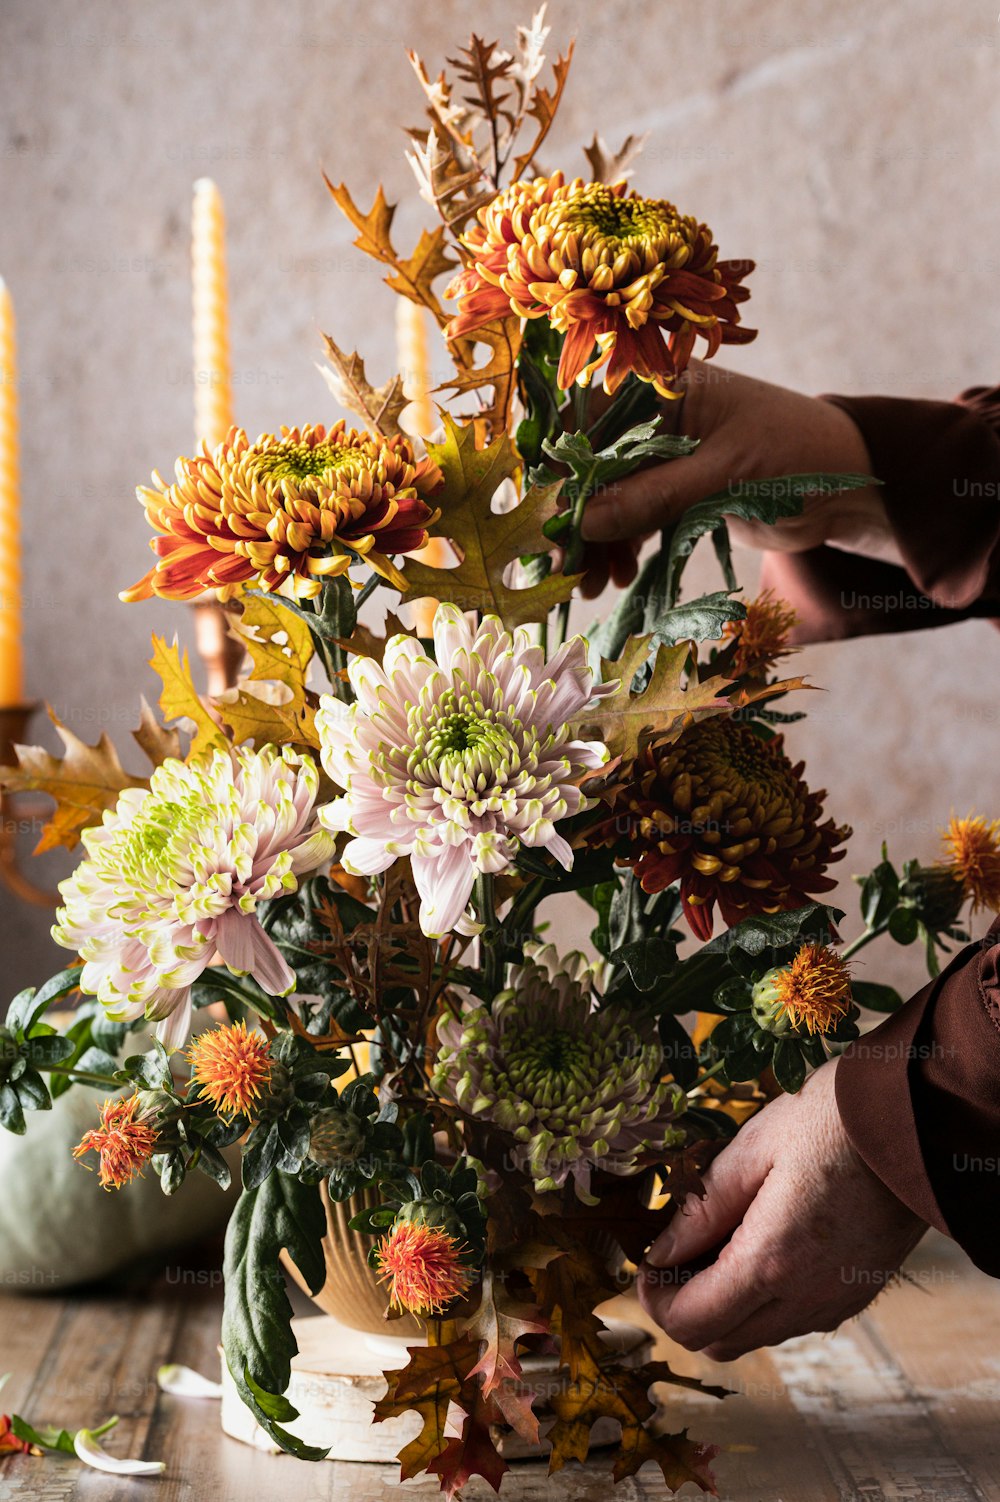 une personne disposant des fleurs dans un vase sur une table